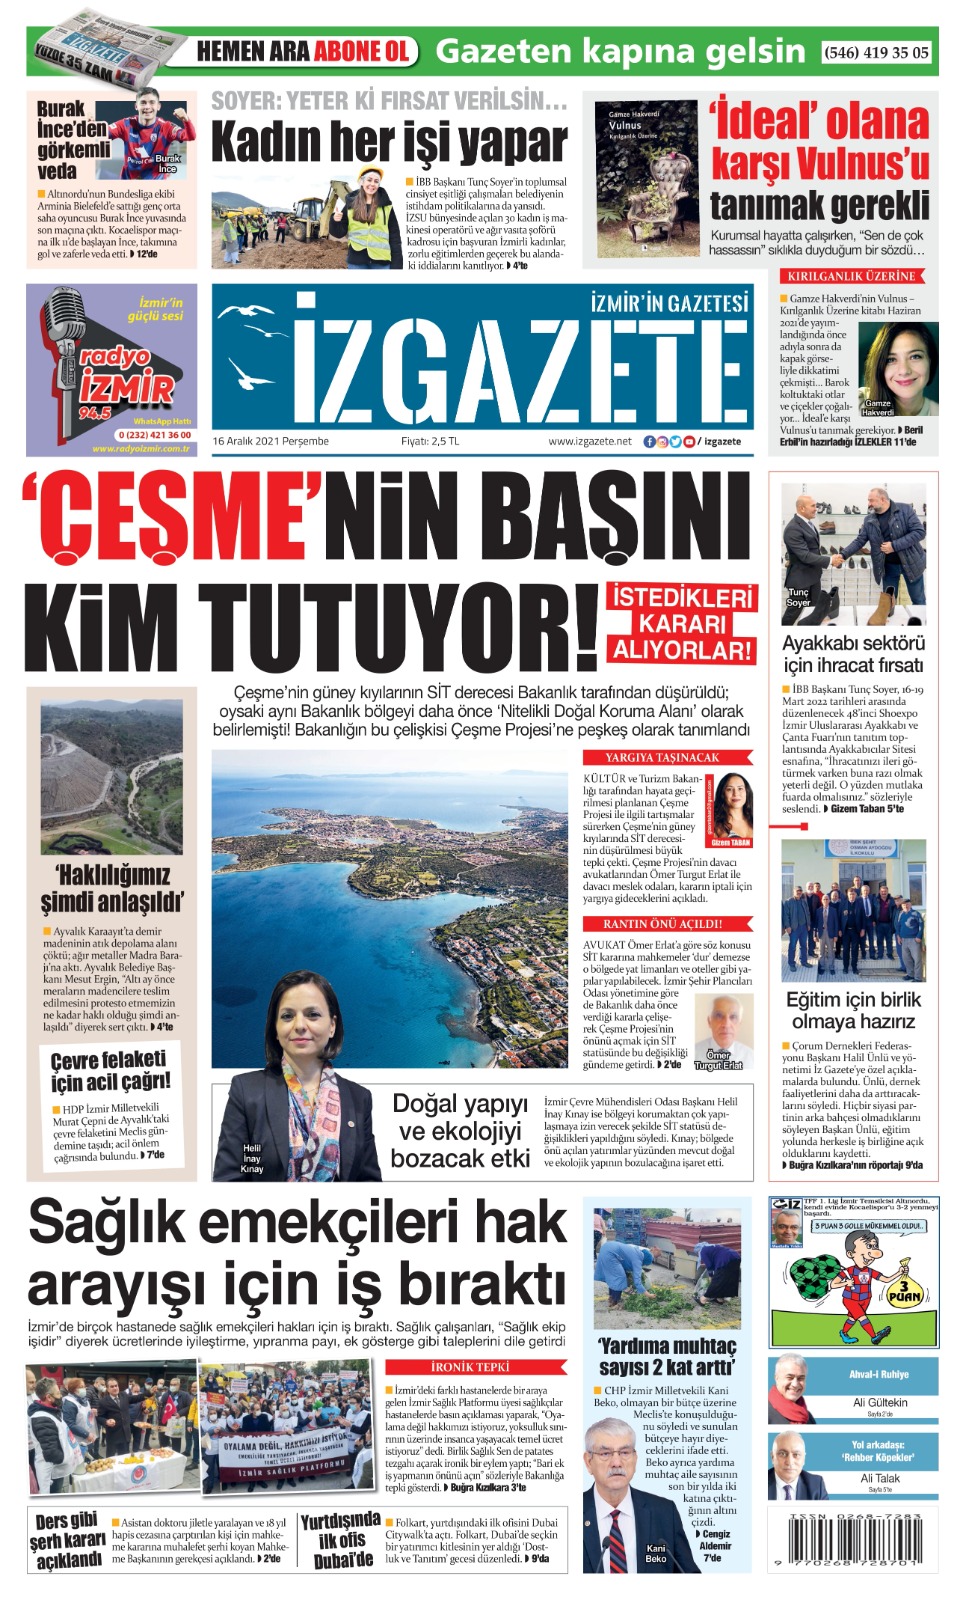 İz Gazete - İzmir'in Gazetesi - 16.12.2021 Manşeti